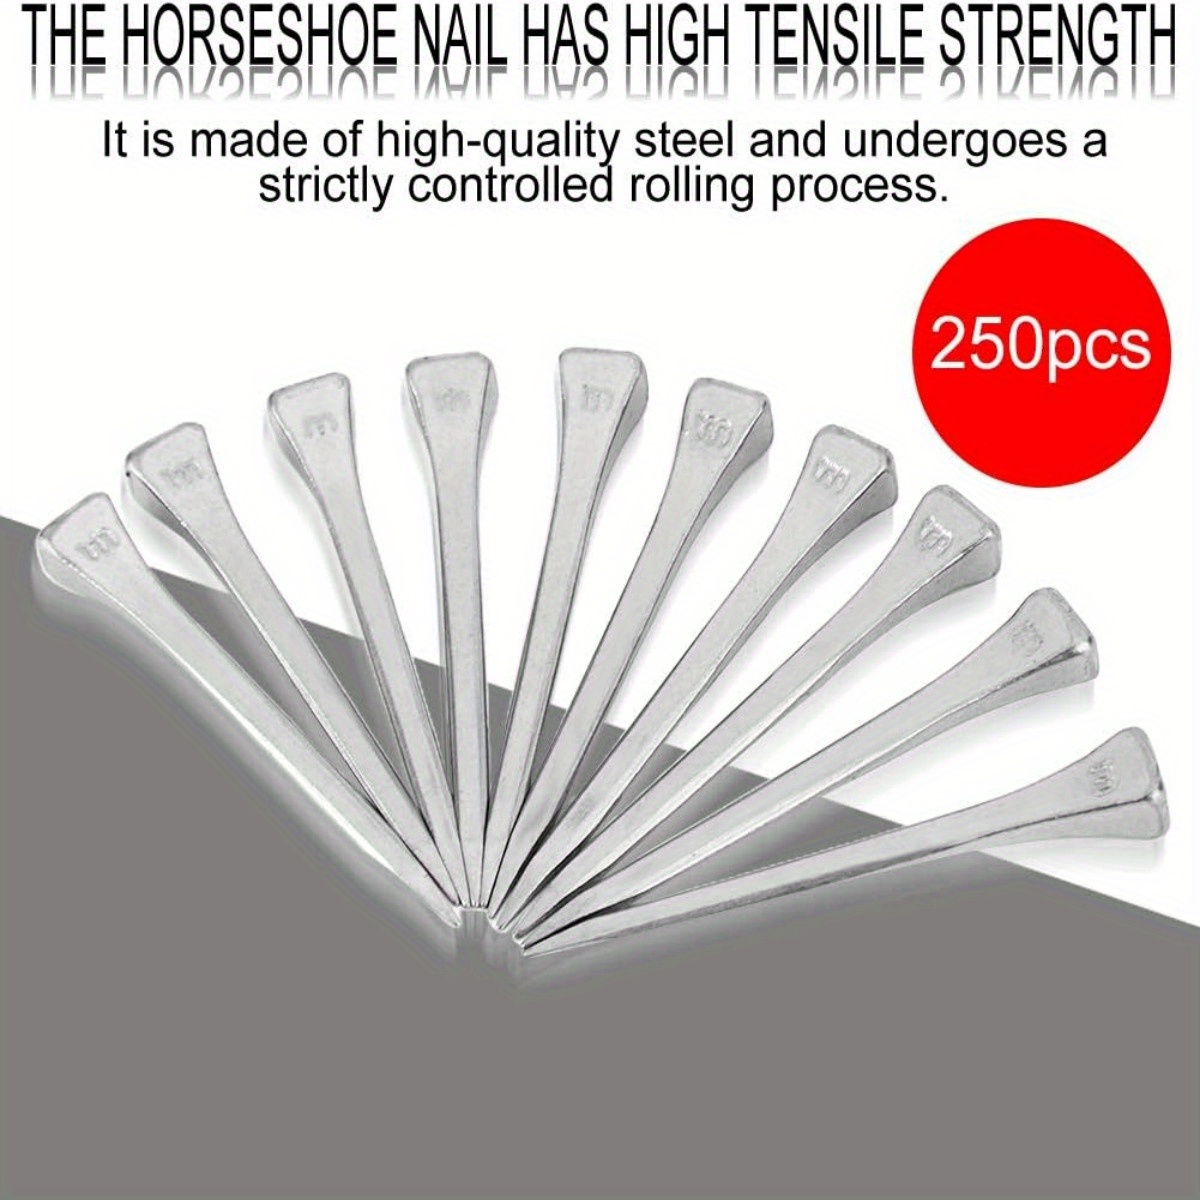 4pcs/set Forged Steel Horseshoes, Horse Supplies For Horse Racing,  Training, Transport Horseshoes Iron With 25 Horseshoe Nails